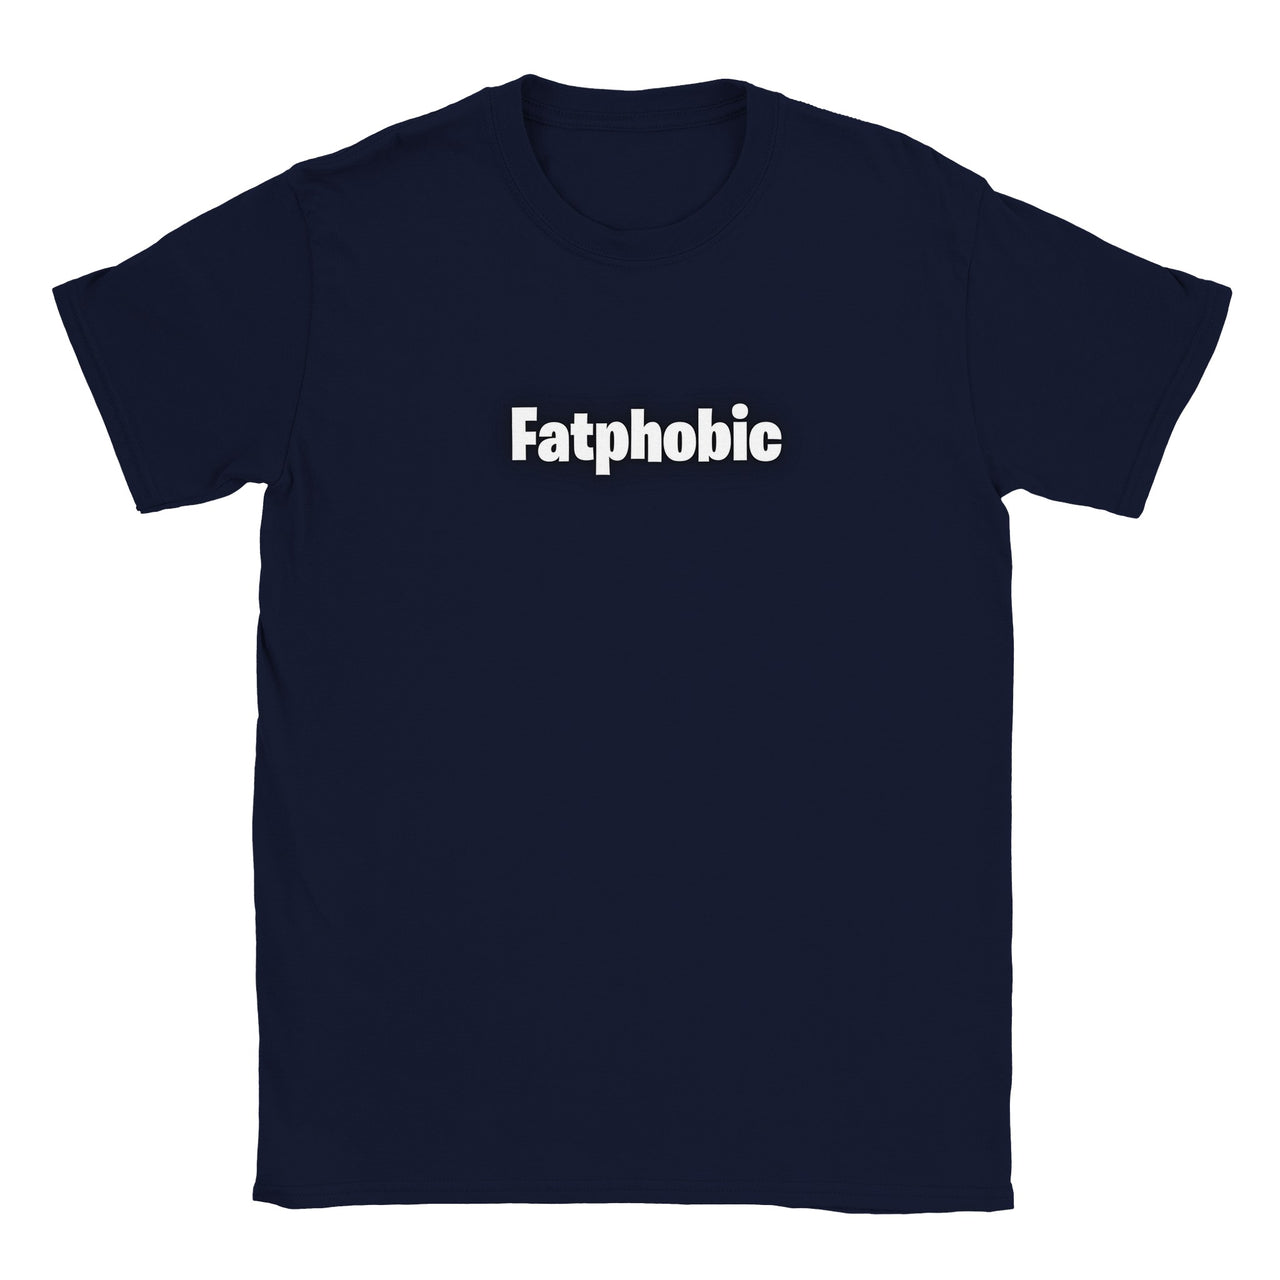 Fatphobic T-shirt